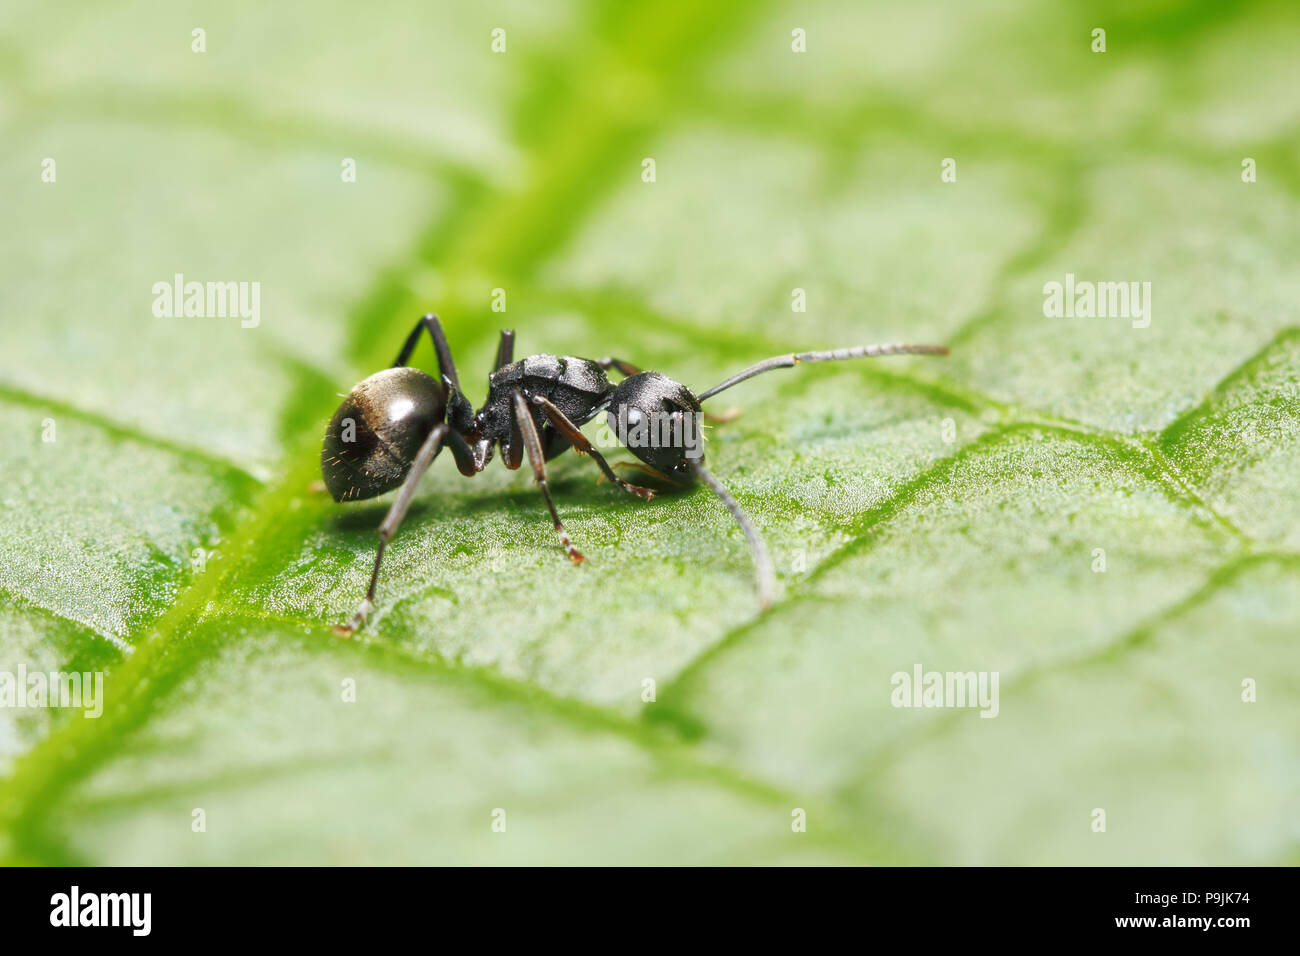 Stachelige ant (Polyrhachis halidayi) auf green leaf Hintergrund (aus Thailand, Südostasien) Stockfoto